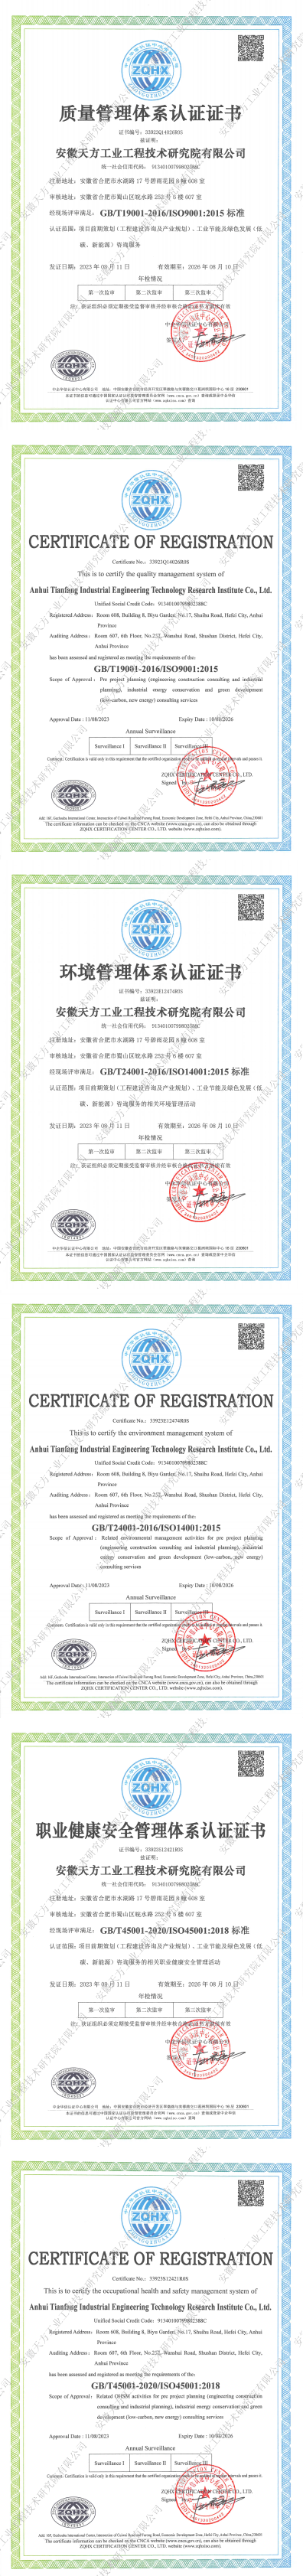 三体系证书-安徽天方工业工程技术研究院有限公司QES(1)(1)_00(1).png